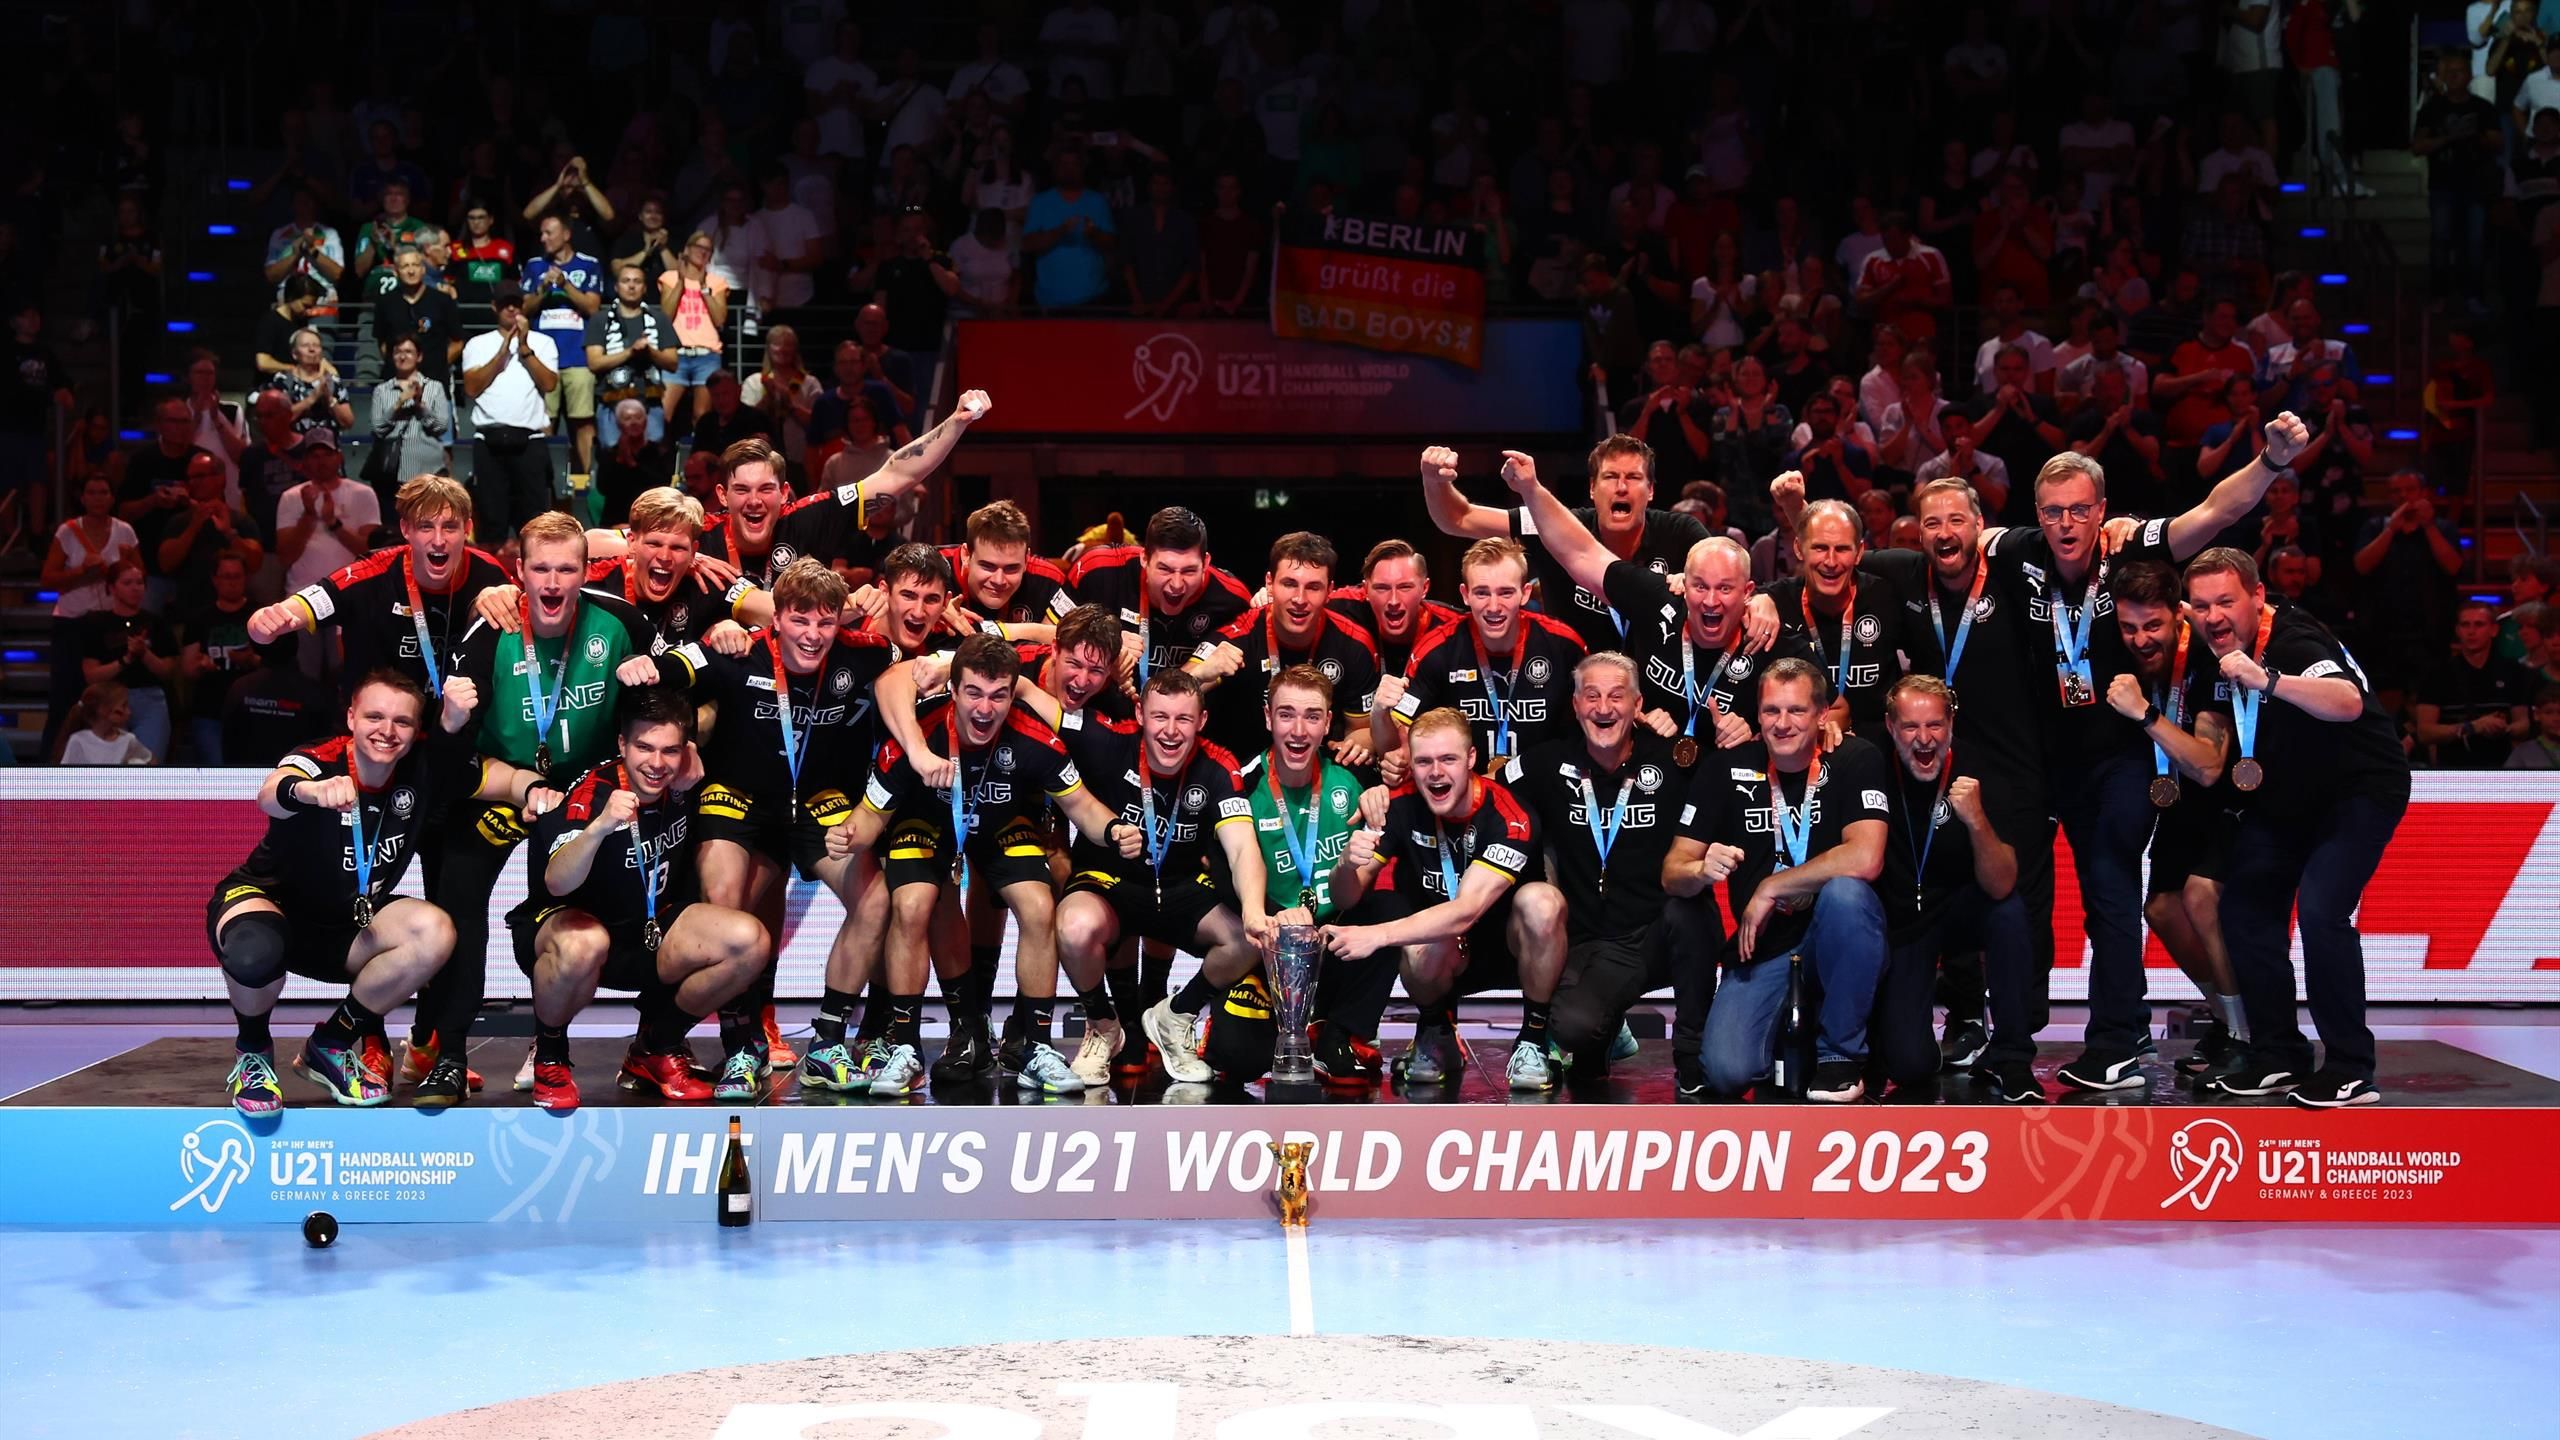 U21-WM Deutschland krönt sich in Berlin zum Weltmeister - DHB-Handballer schlagen Ungarn im Finale